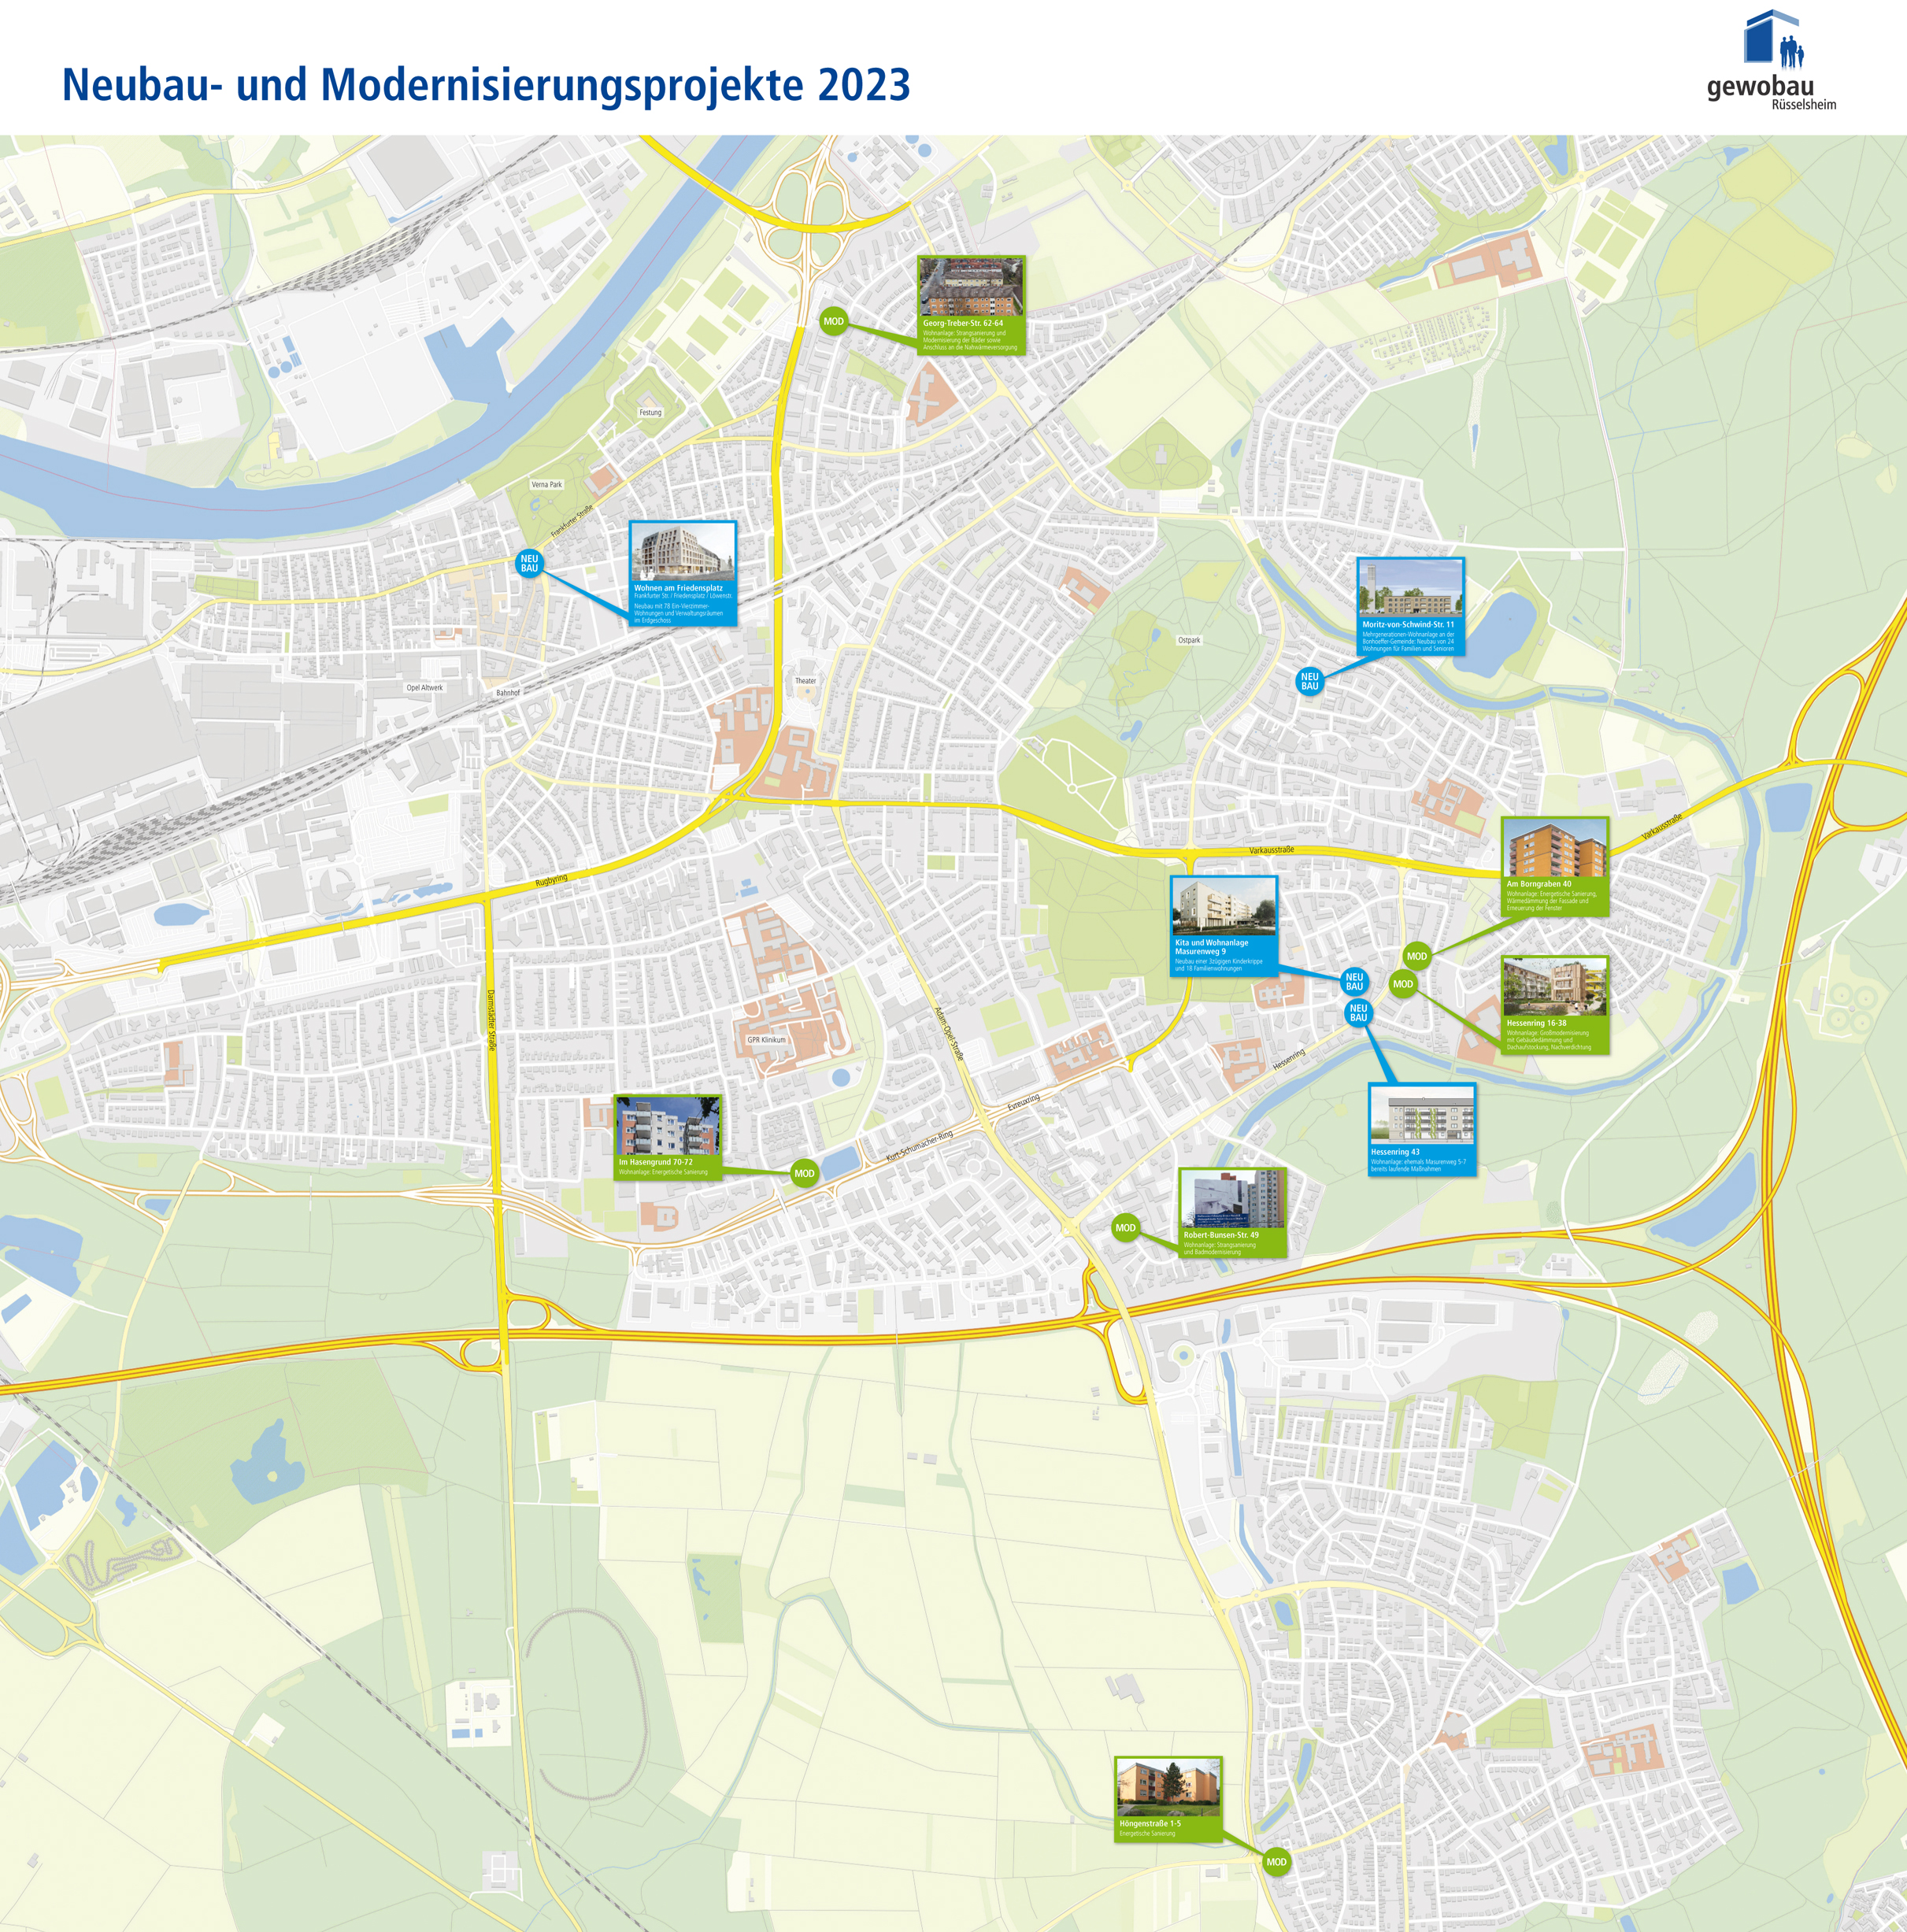 Stadtplan Rüsselsheim am Main mit gewobau Neubau- und Modernisierungsprojekten 2023